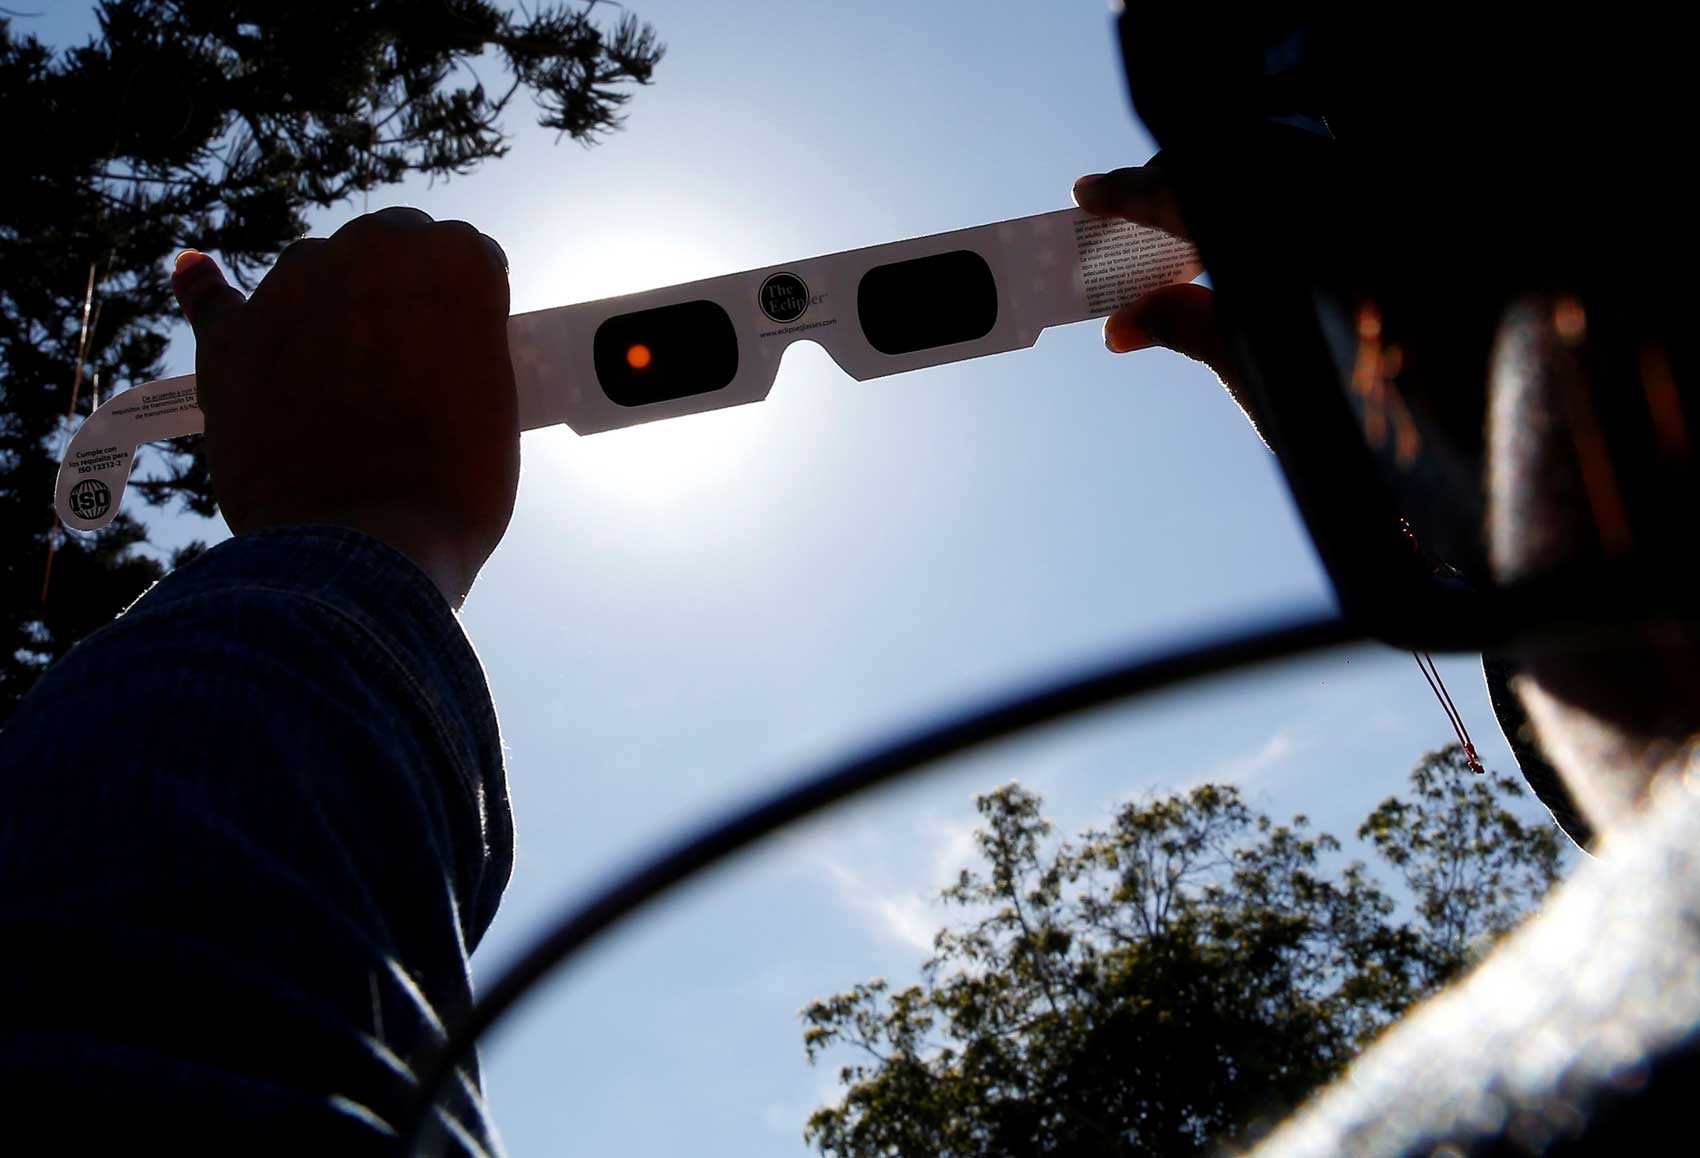 Olhar o eclipse solar sem proteção pode causar cegueira, mas há alternativas seguras; Veja dicas